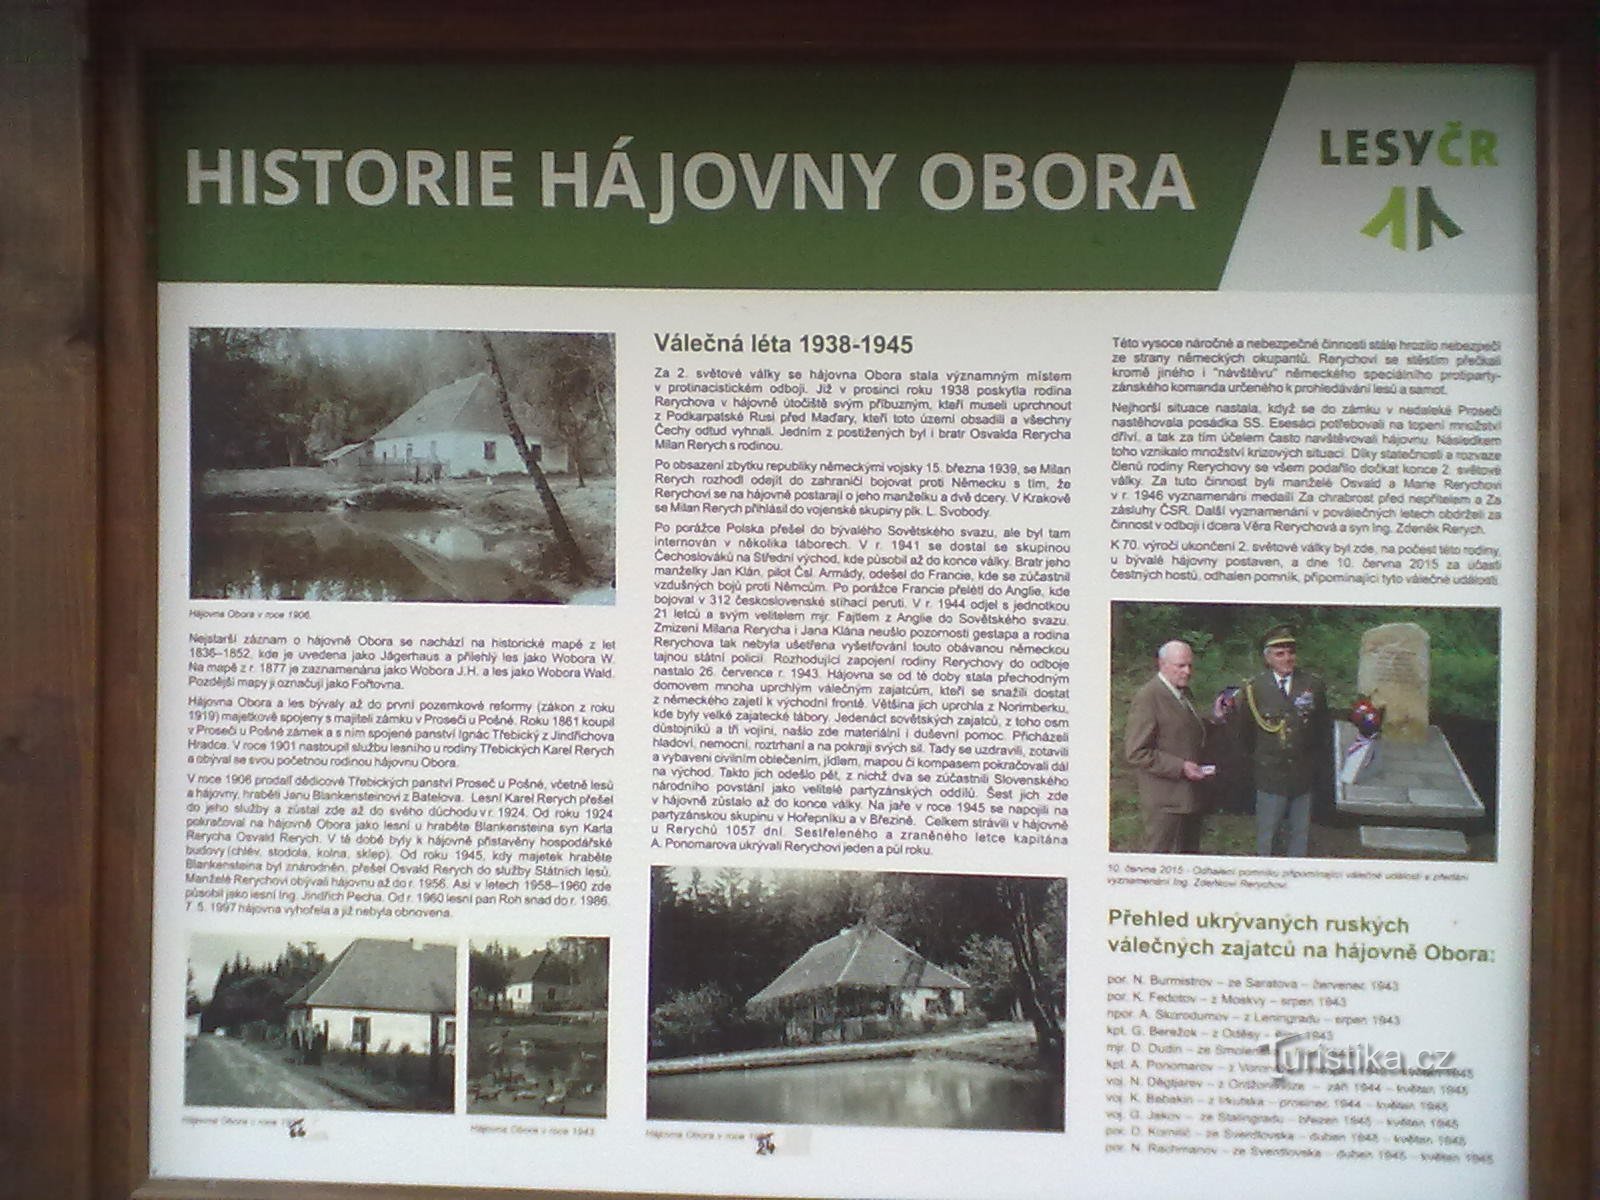 2. Nơi ẩn náu trước đây của Rerychov - trong chiến tranh, gia đình đã giấu những tù nhân trốn thoát khỏi các trại tập trung.